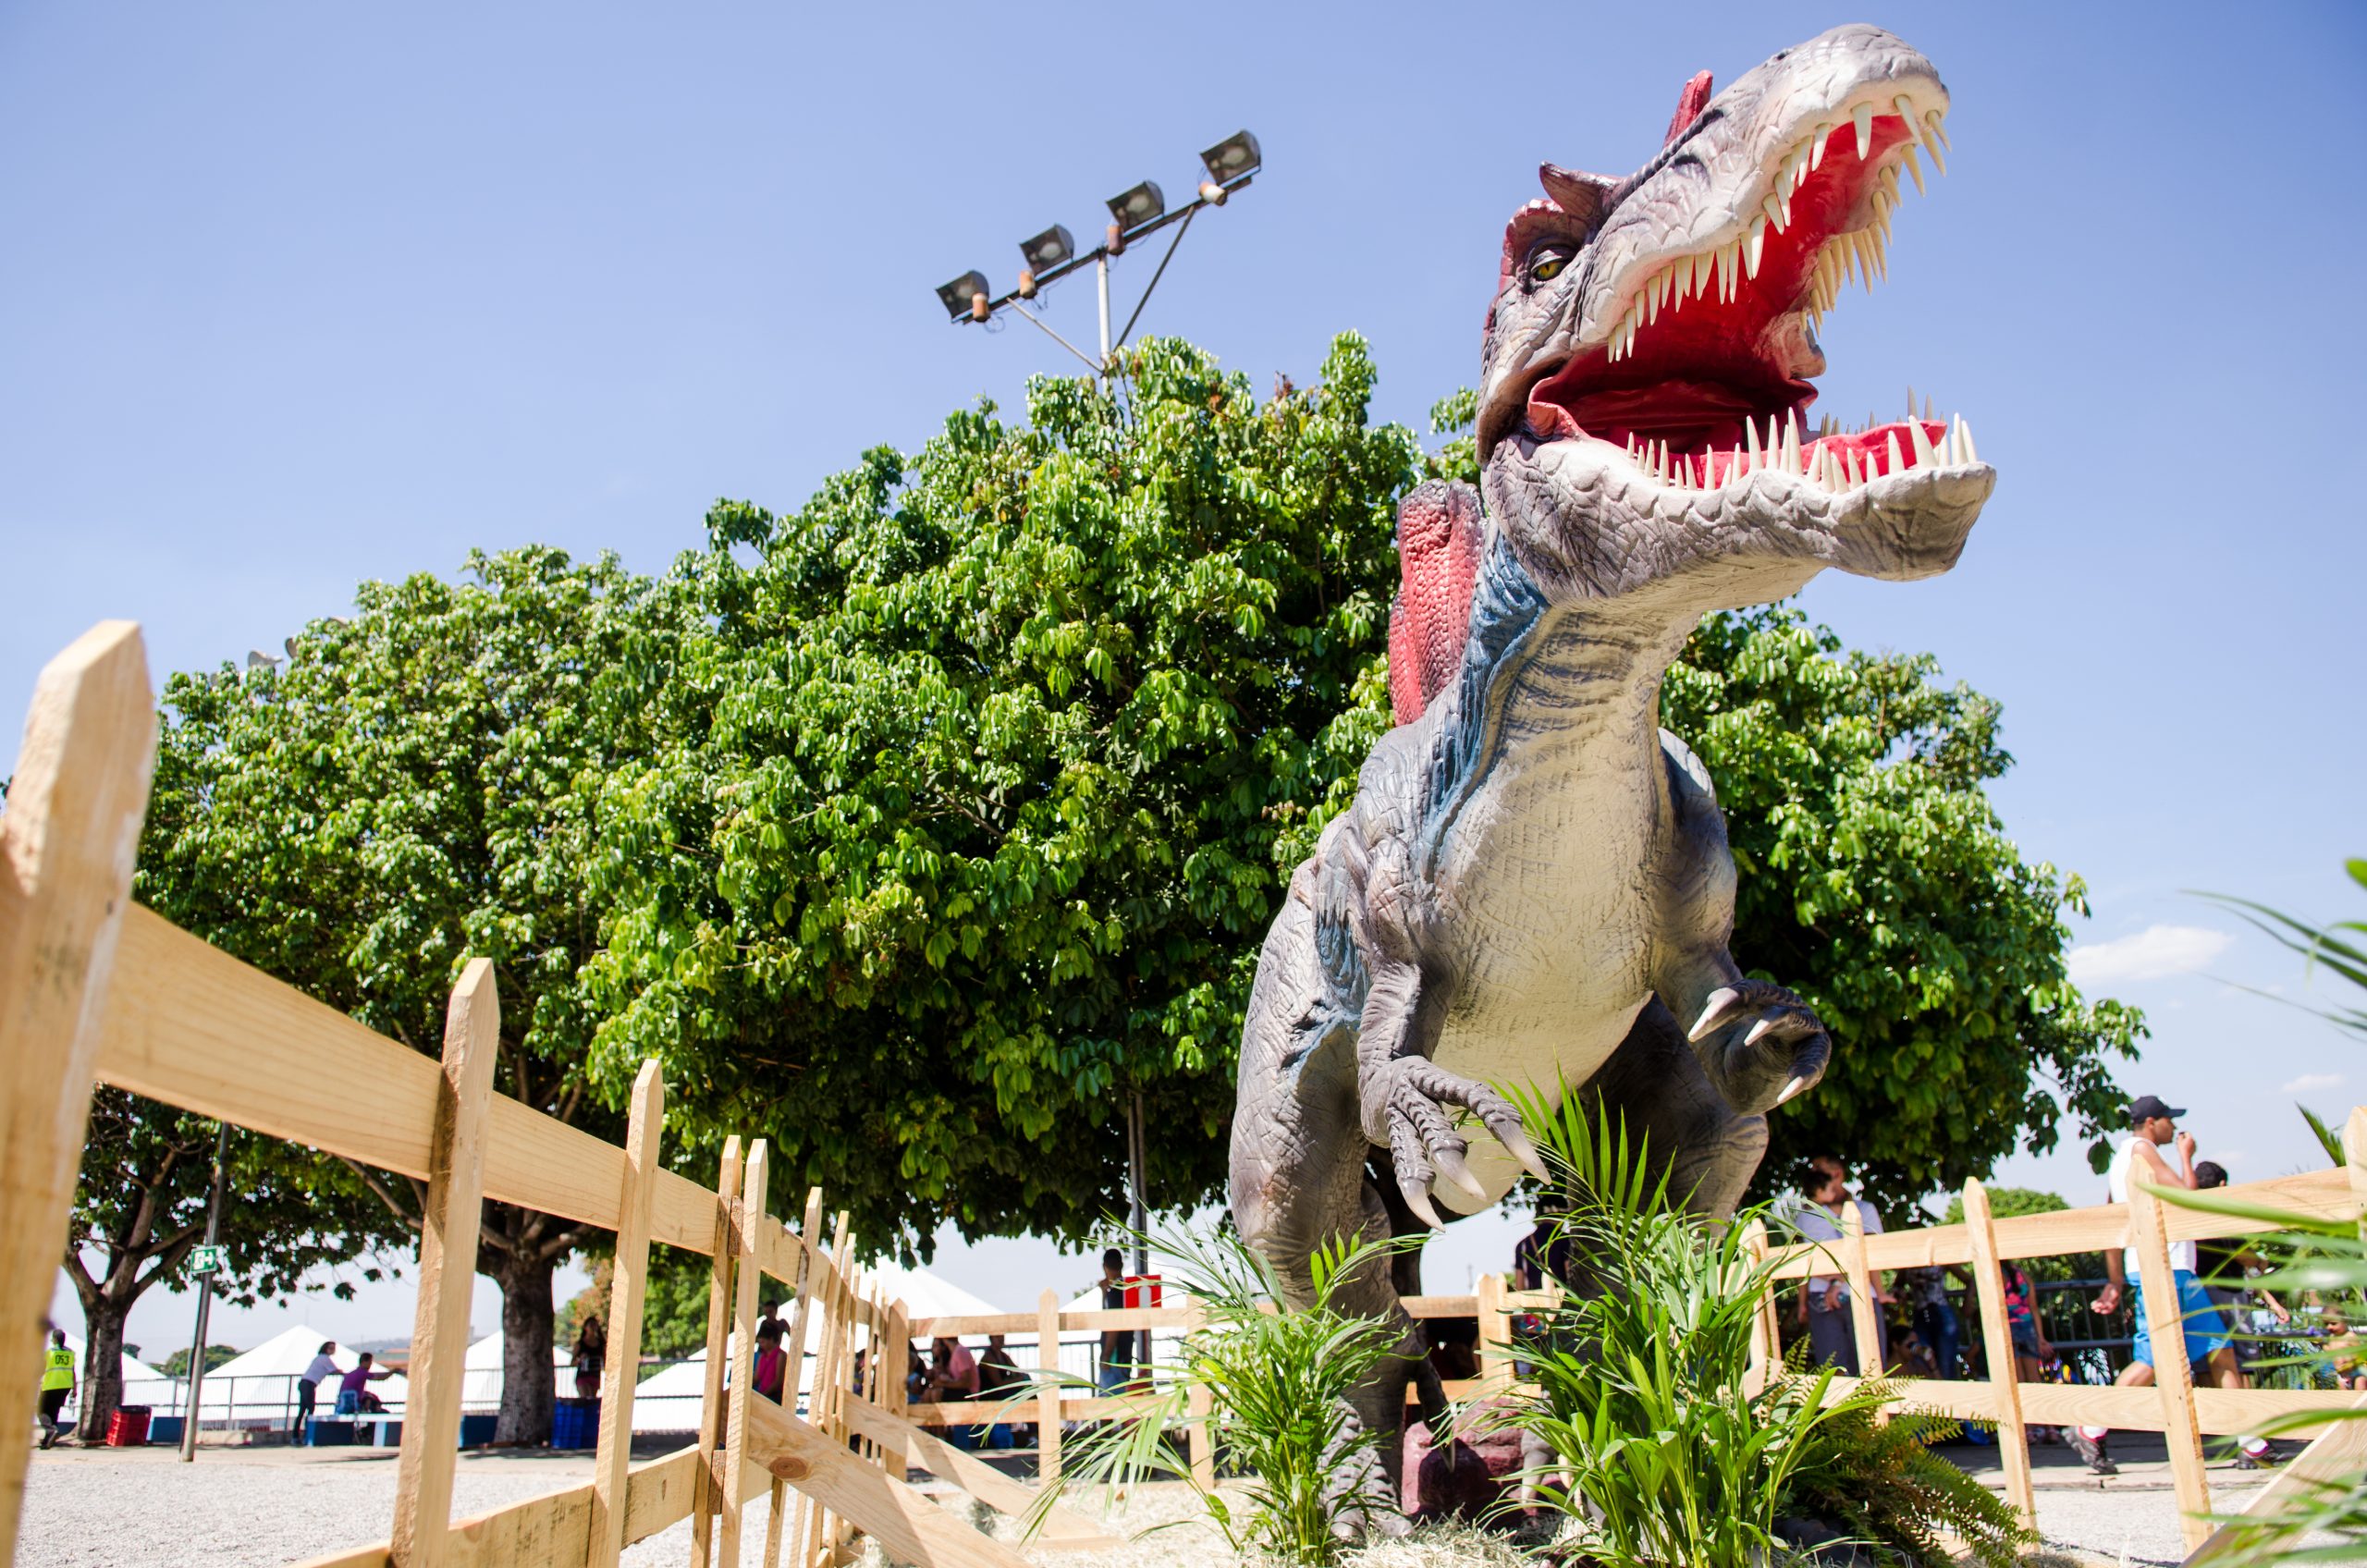 Shopping Iguatemi Bosque recebe exposição “Mundo Jurássico” com réplicas de dinossauros em tamanho real